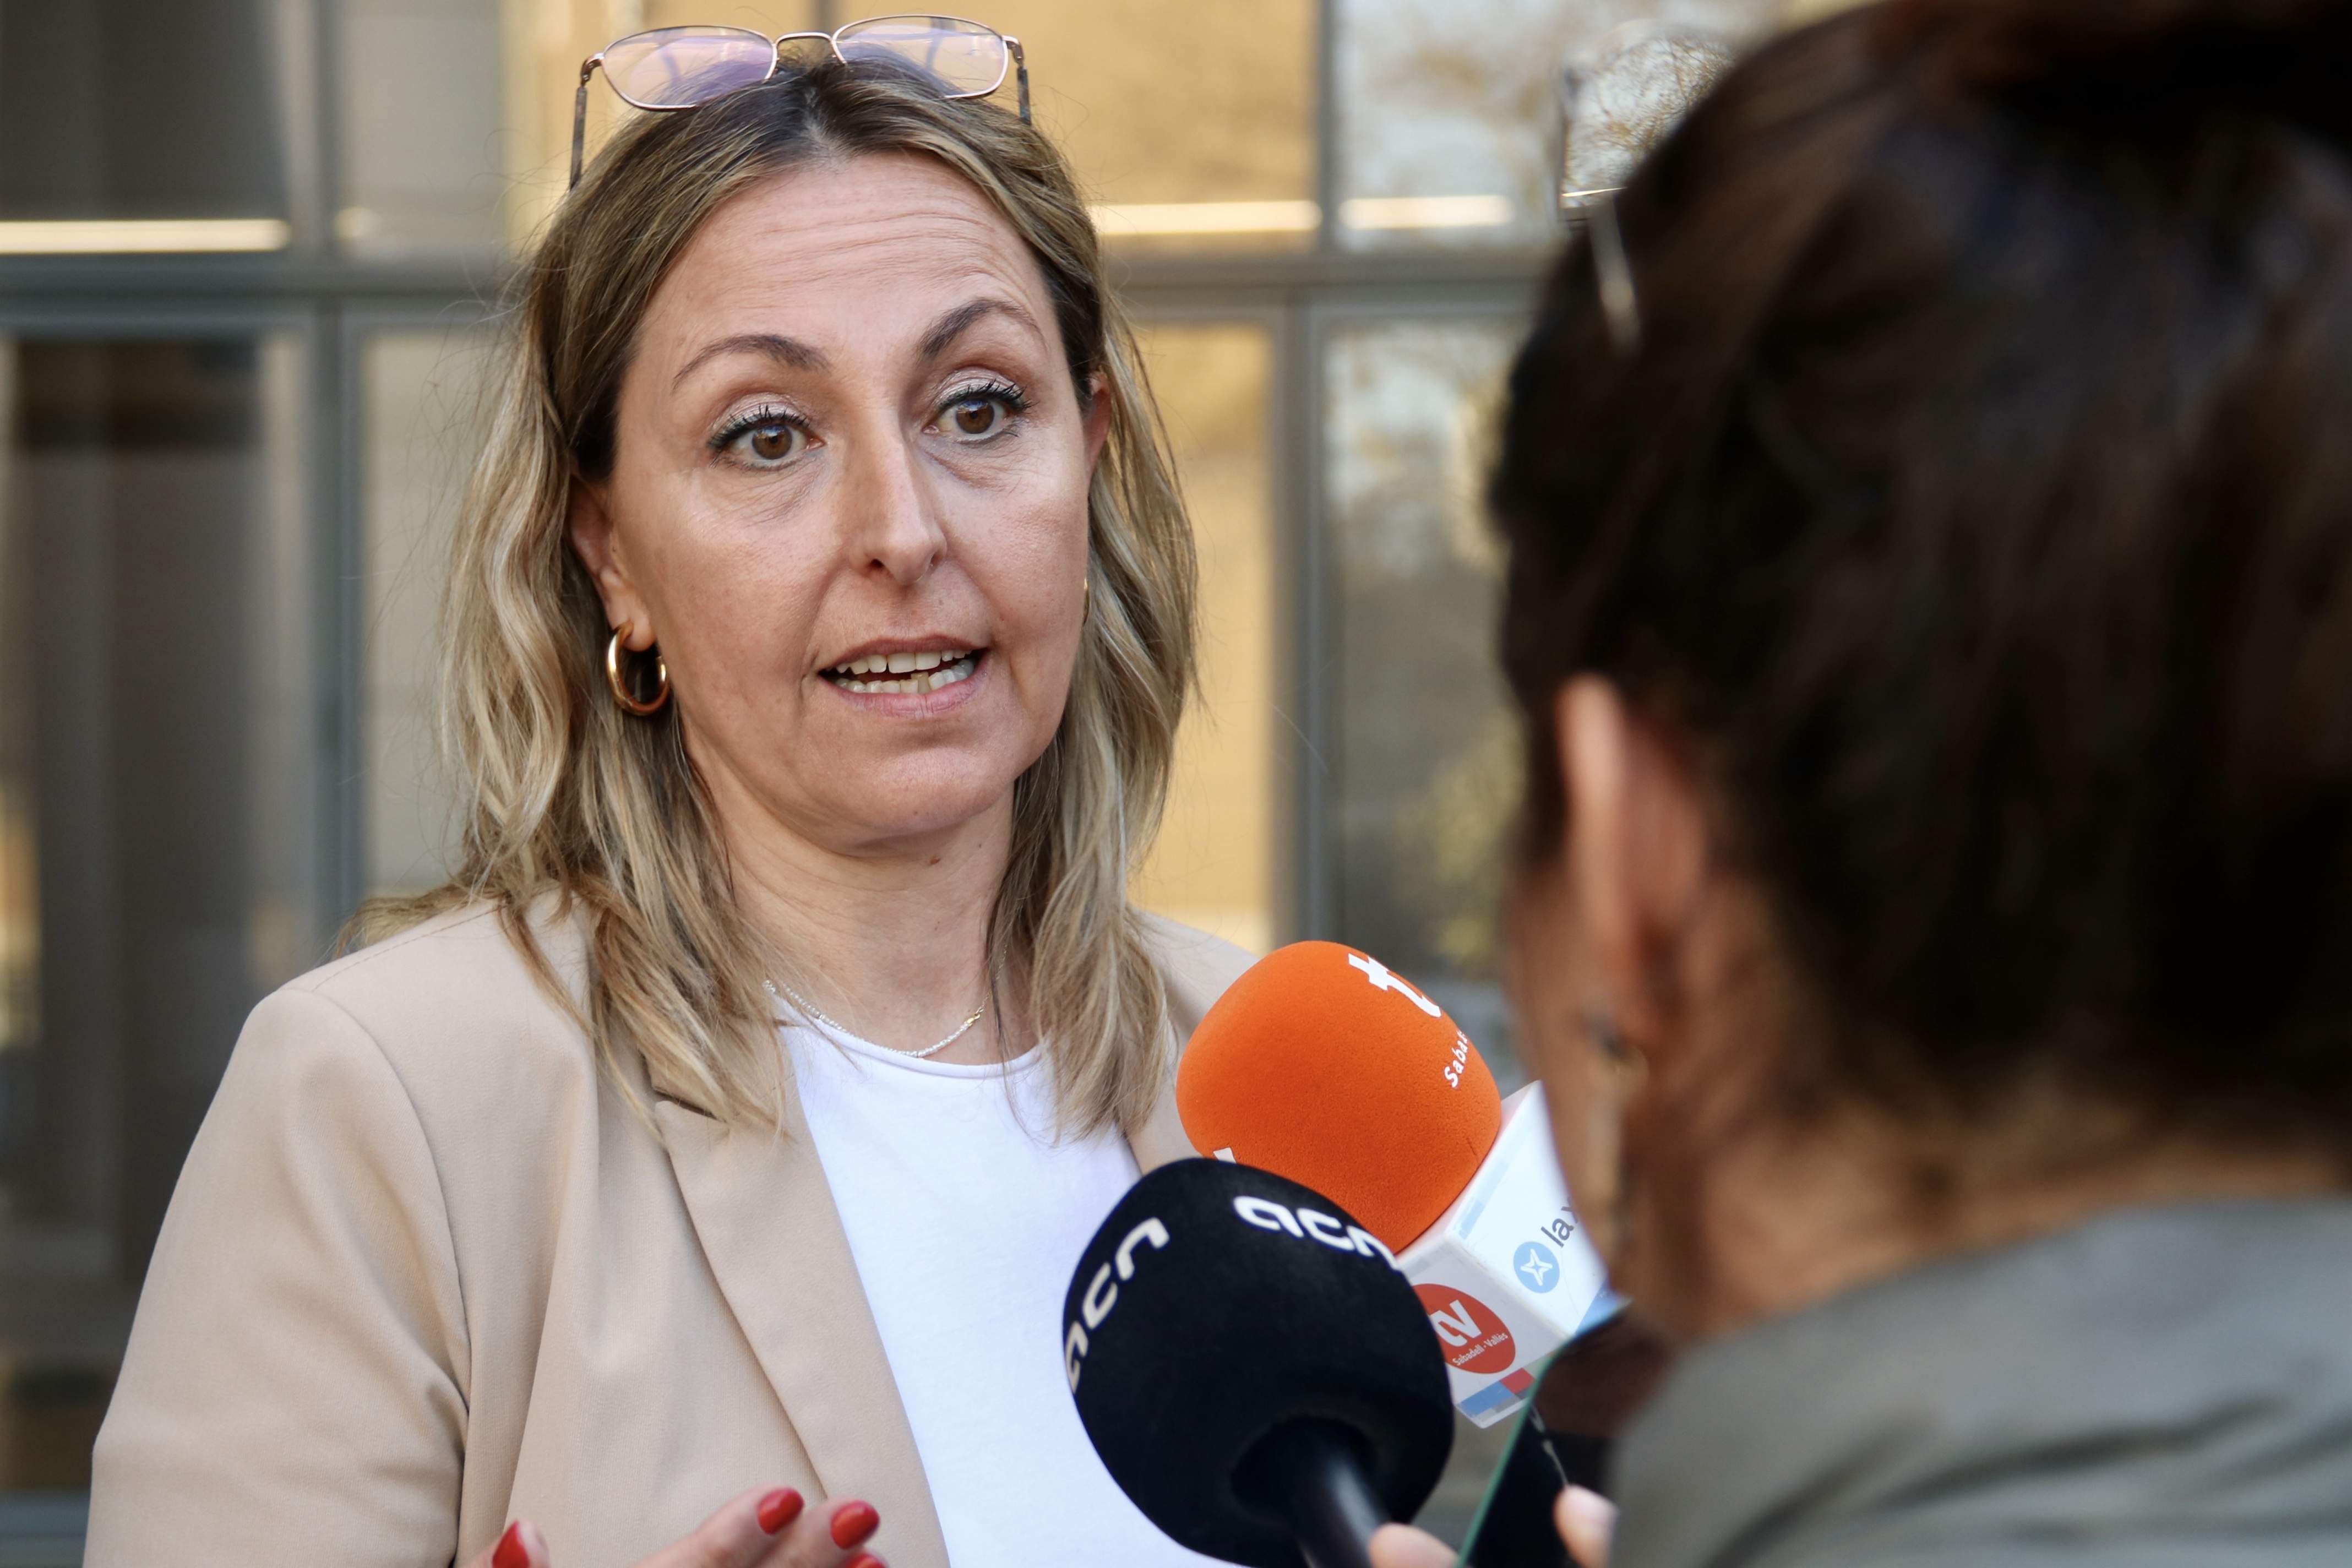 Dimite la alcaldesa de Badia del Vallès tras ser elegida diputada del PSC al Parlament